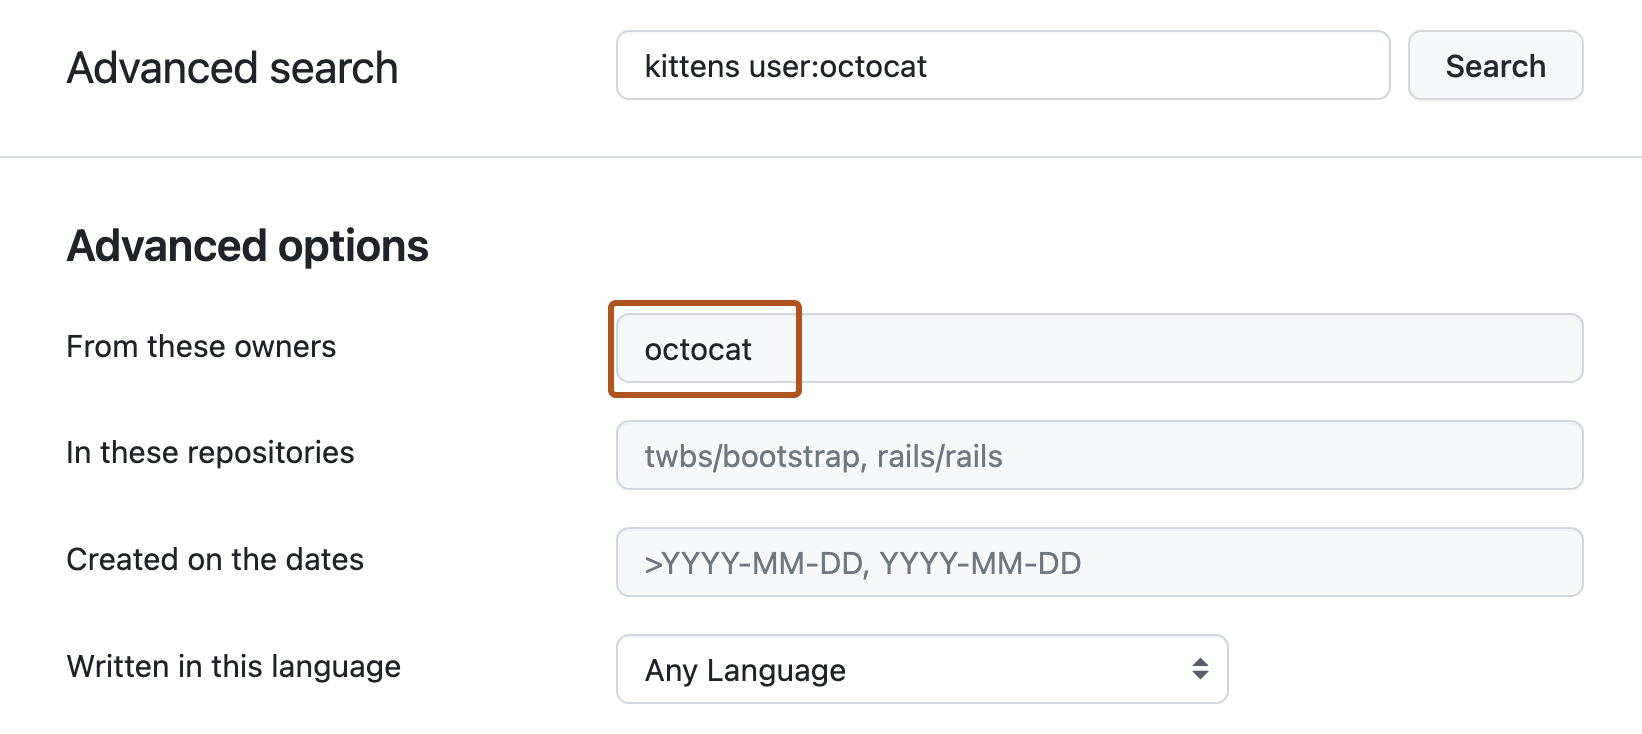 [高度な検索] ページのスクリーンショット。 上部の検索バーにはクエリ "kittens user:octocat" が入力され、下の [詳細オプション] セクションの [これらの所有者から] テキスト ボックスには "octocat" という用語が含まれており、濃いオレンジ色の枠線で囲まれています。